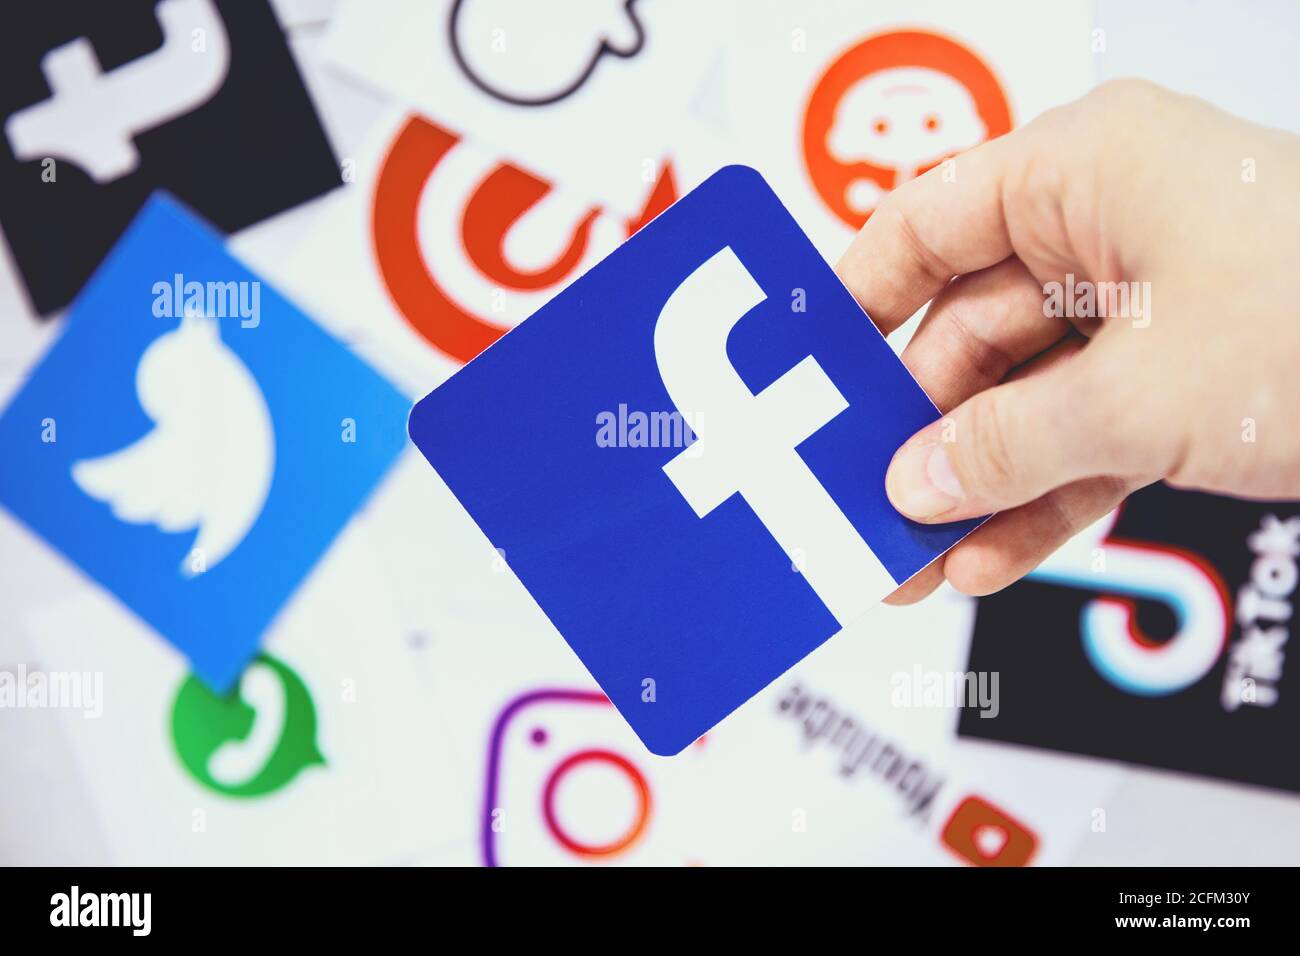 WROCLAW, POLOGNE - 29 août 2020 : la main tient le logo Facebook au-dessus d'autres symboles des médias sociaux. Facebook est un service américain de médias sociaux en ligne Banque D'Images